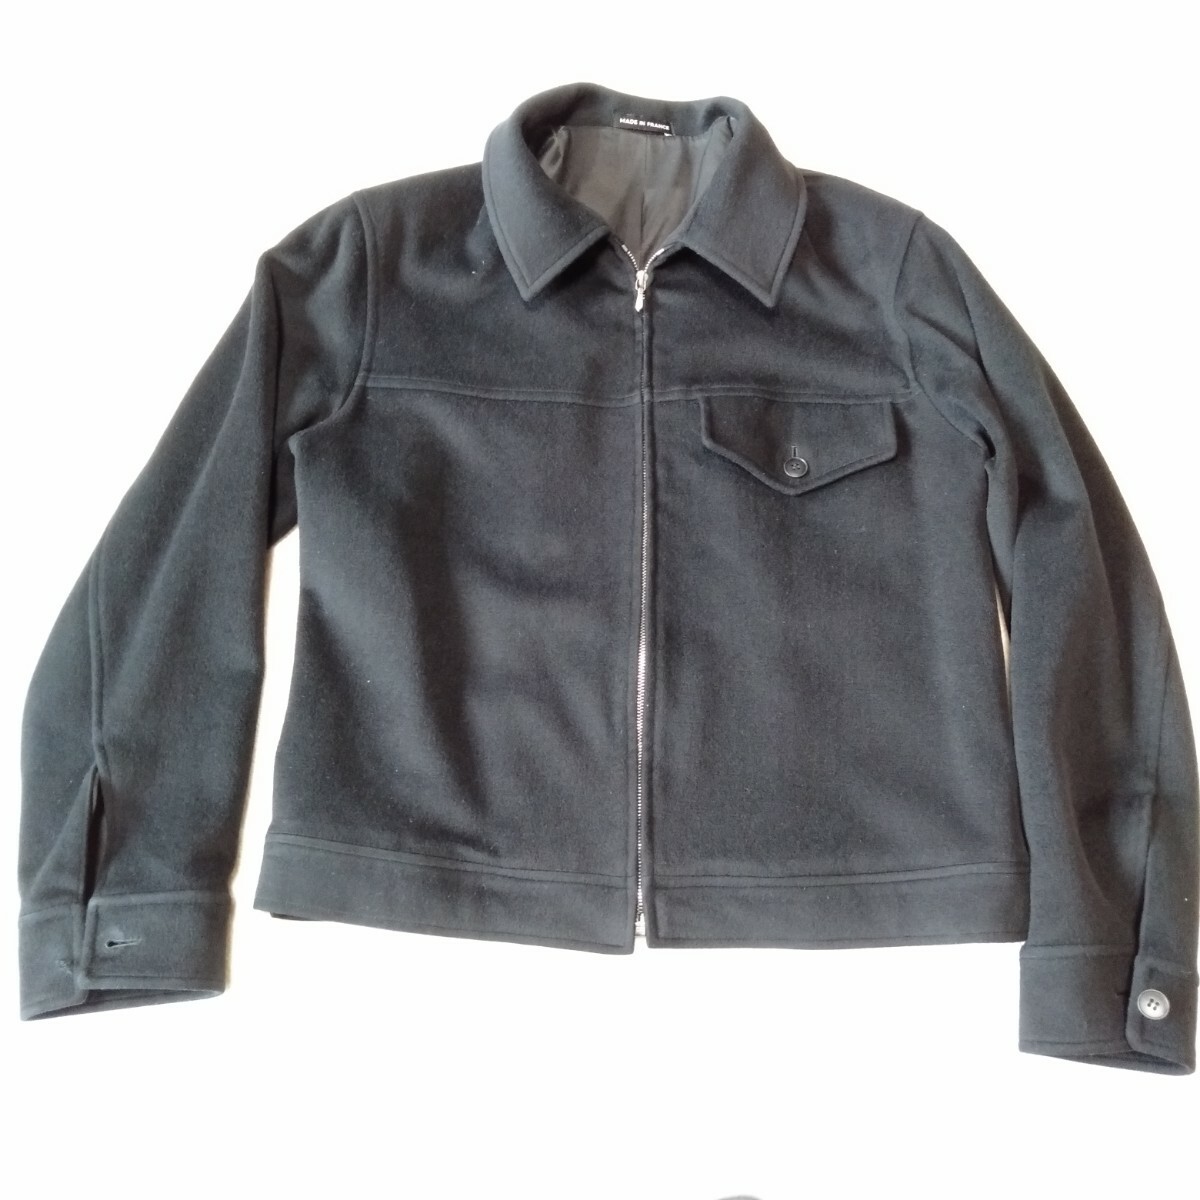 む267 agnes b サイズ0 ウール ジャケット ブラック ジップアップ ブルゾン 右袖ボタン取れてます アニエス・ベー 洋服の画像1